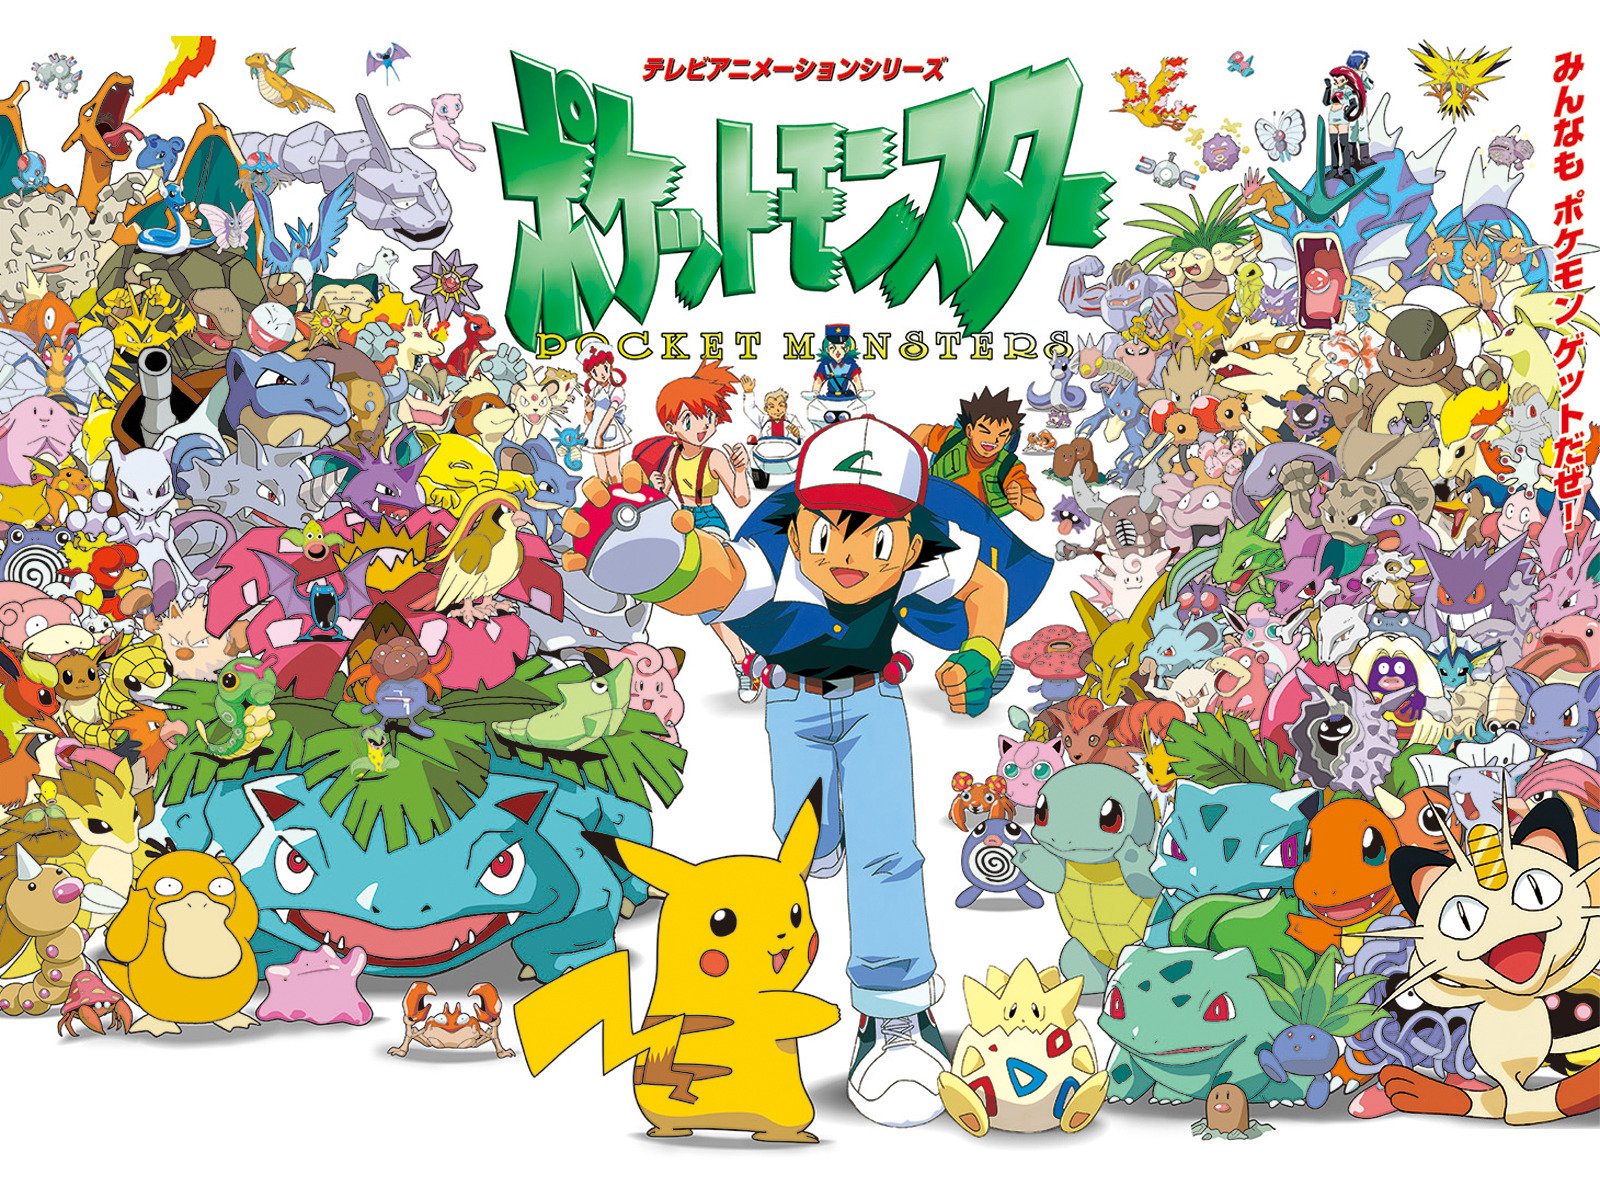 Bulbapedia on X: 17 years ago today, the Pokémon anime first